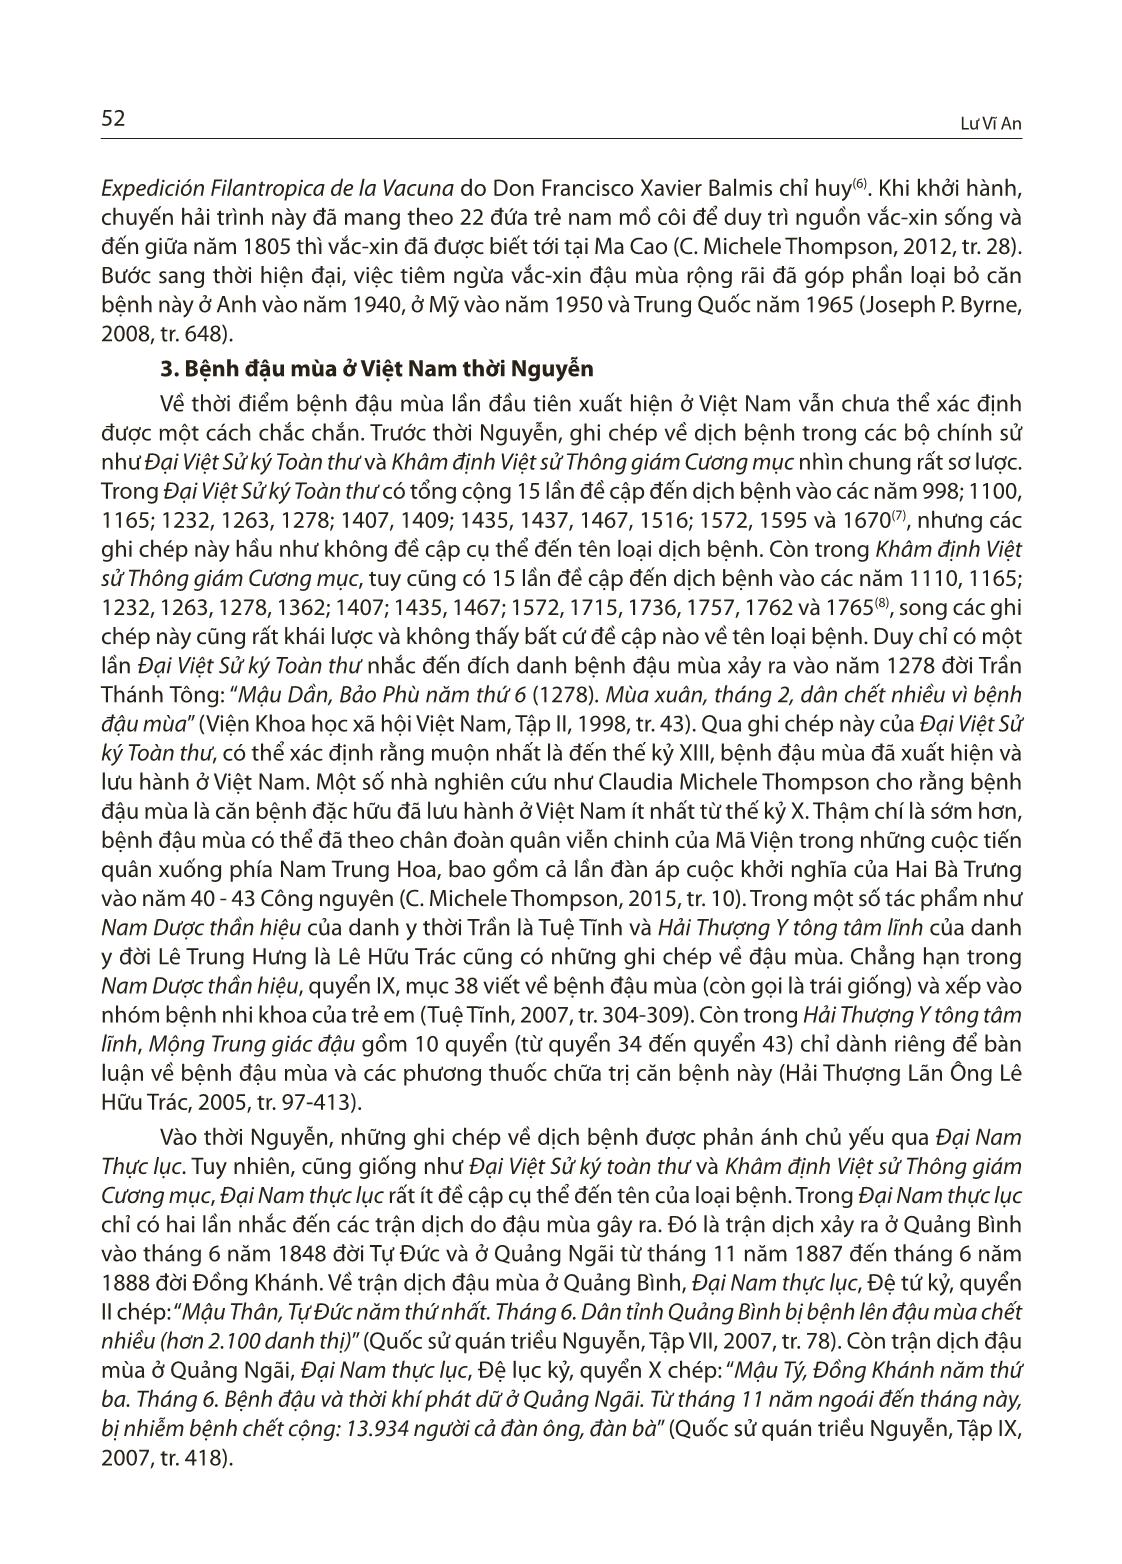 Bệnh đậu mùa ở Việt Nam thời Nguyễn và việc tiếp cận vắc-Xin đậu mùa của nhà Nguyễn vào đầu thế kỷ XIX trang 4